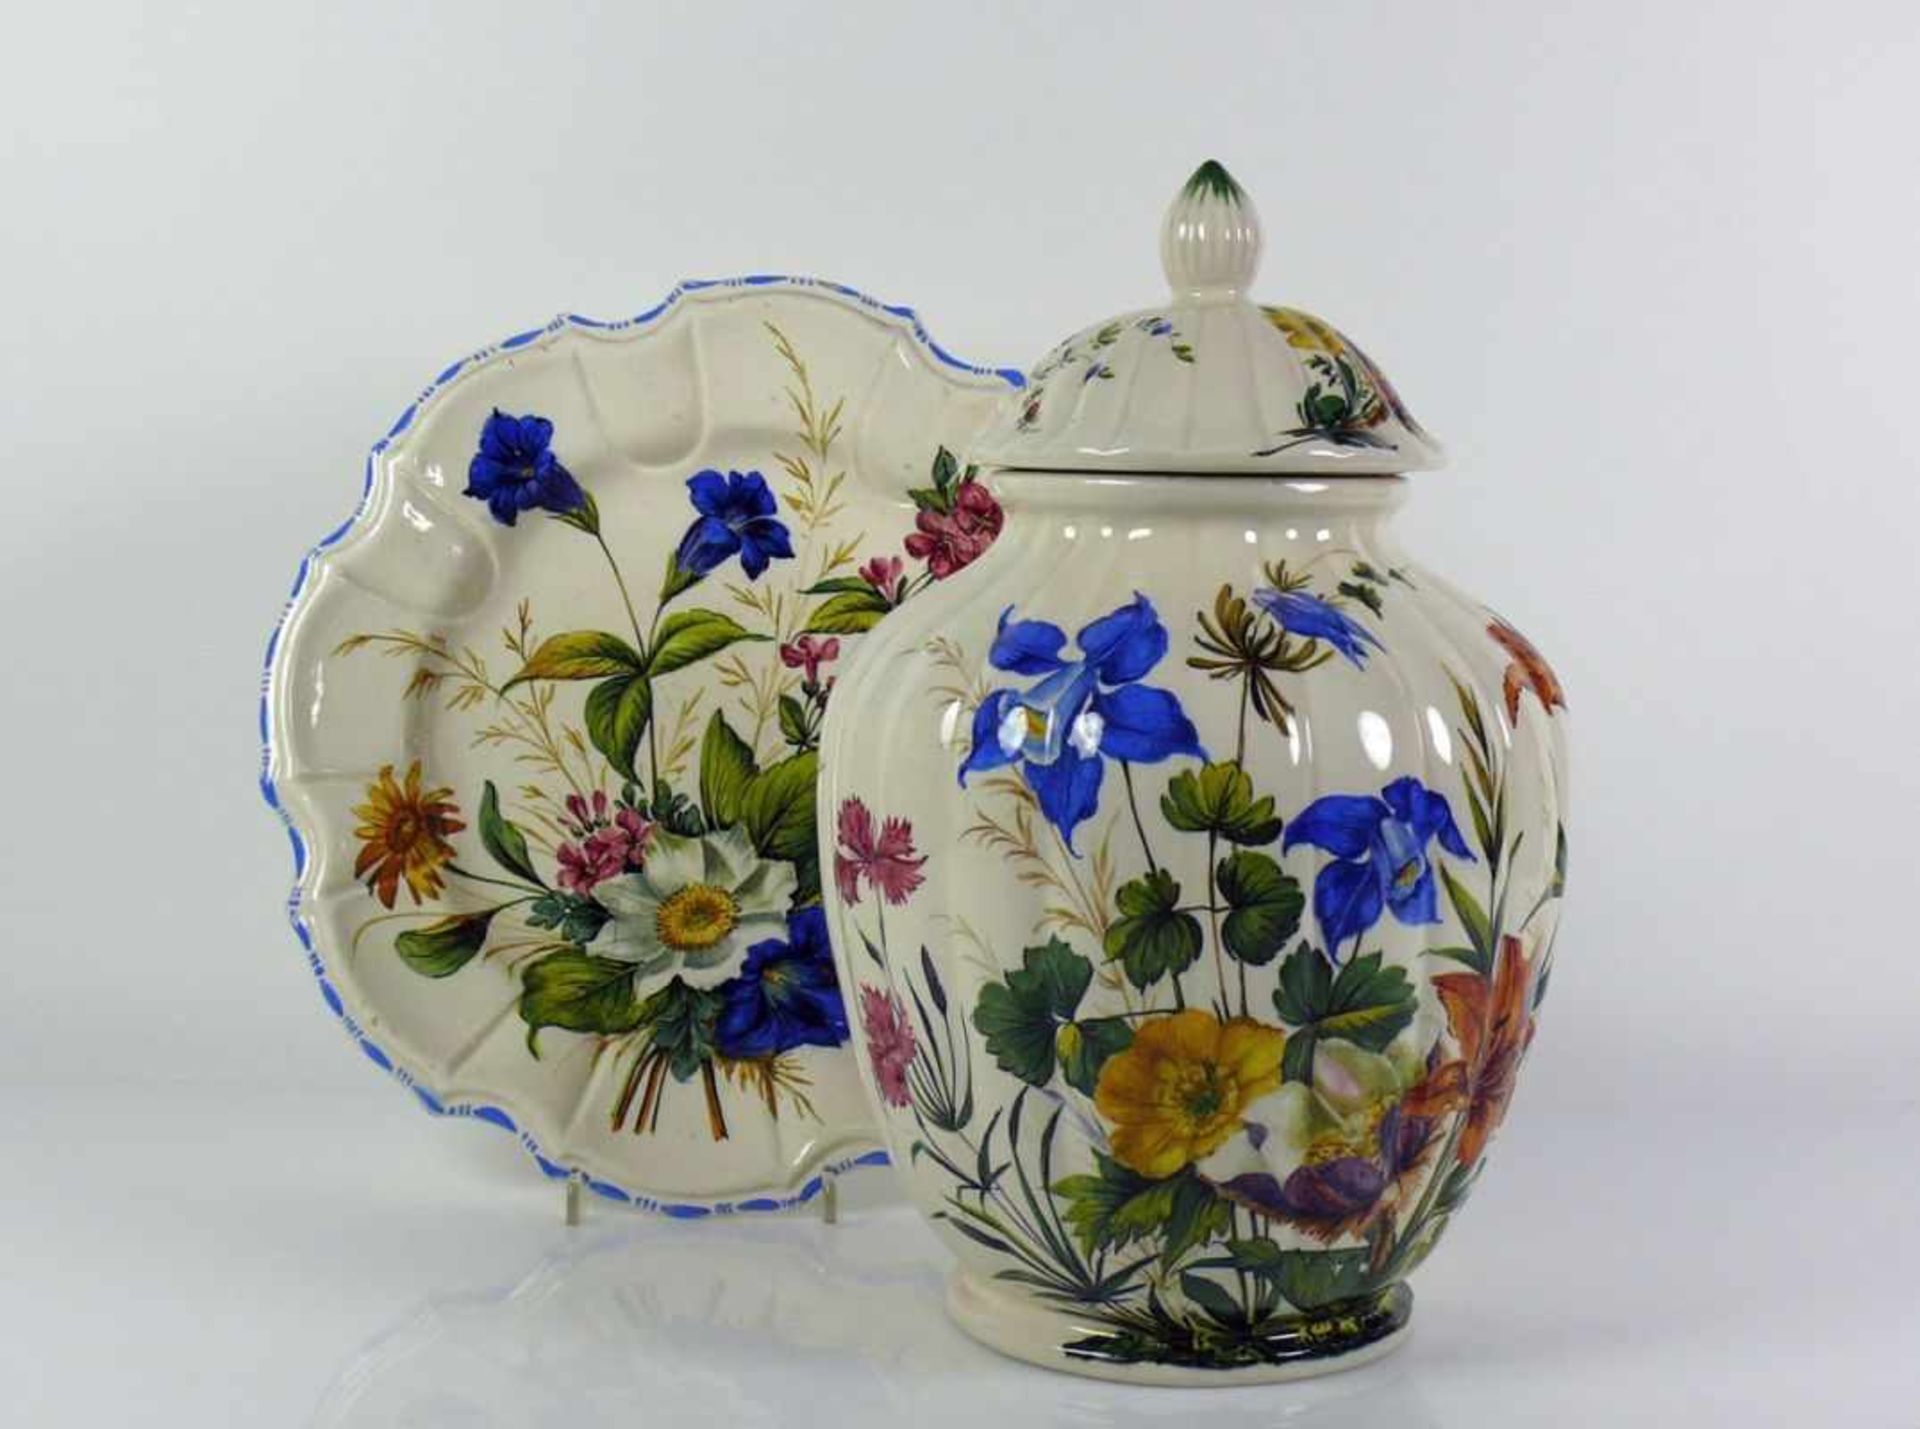 Deckelvase mit Teller (Italien, um 1900) Fayence; farbige Blütenmalerei; Vase mit gewölbtem